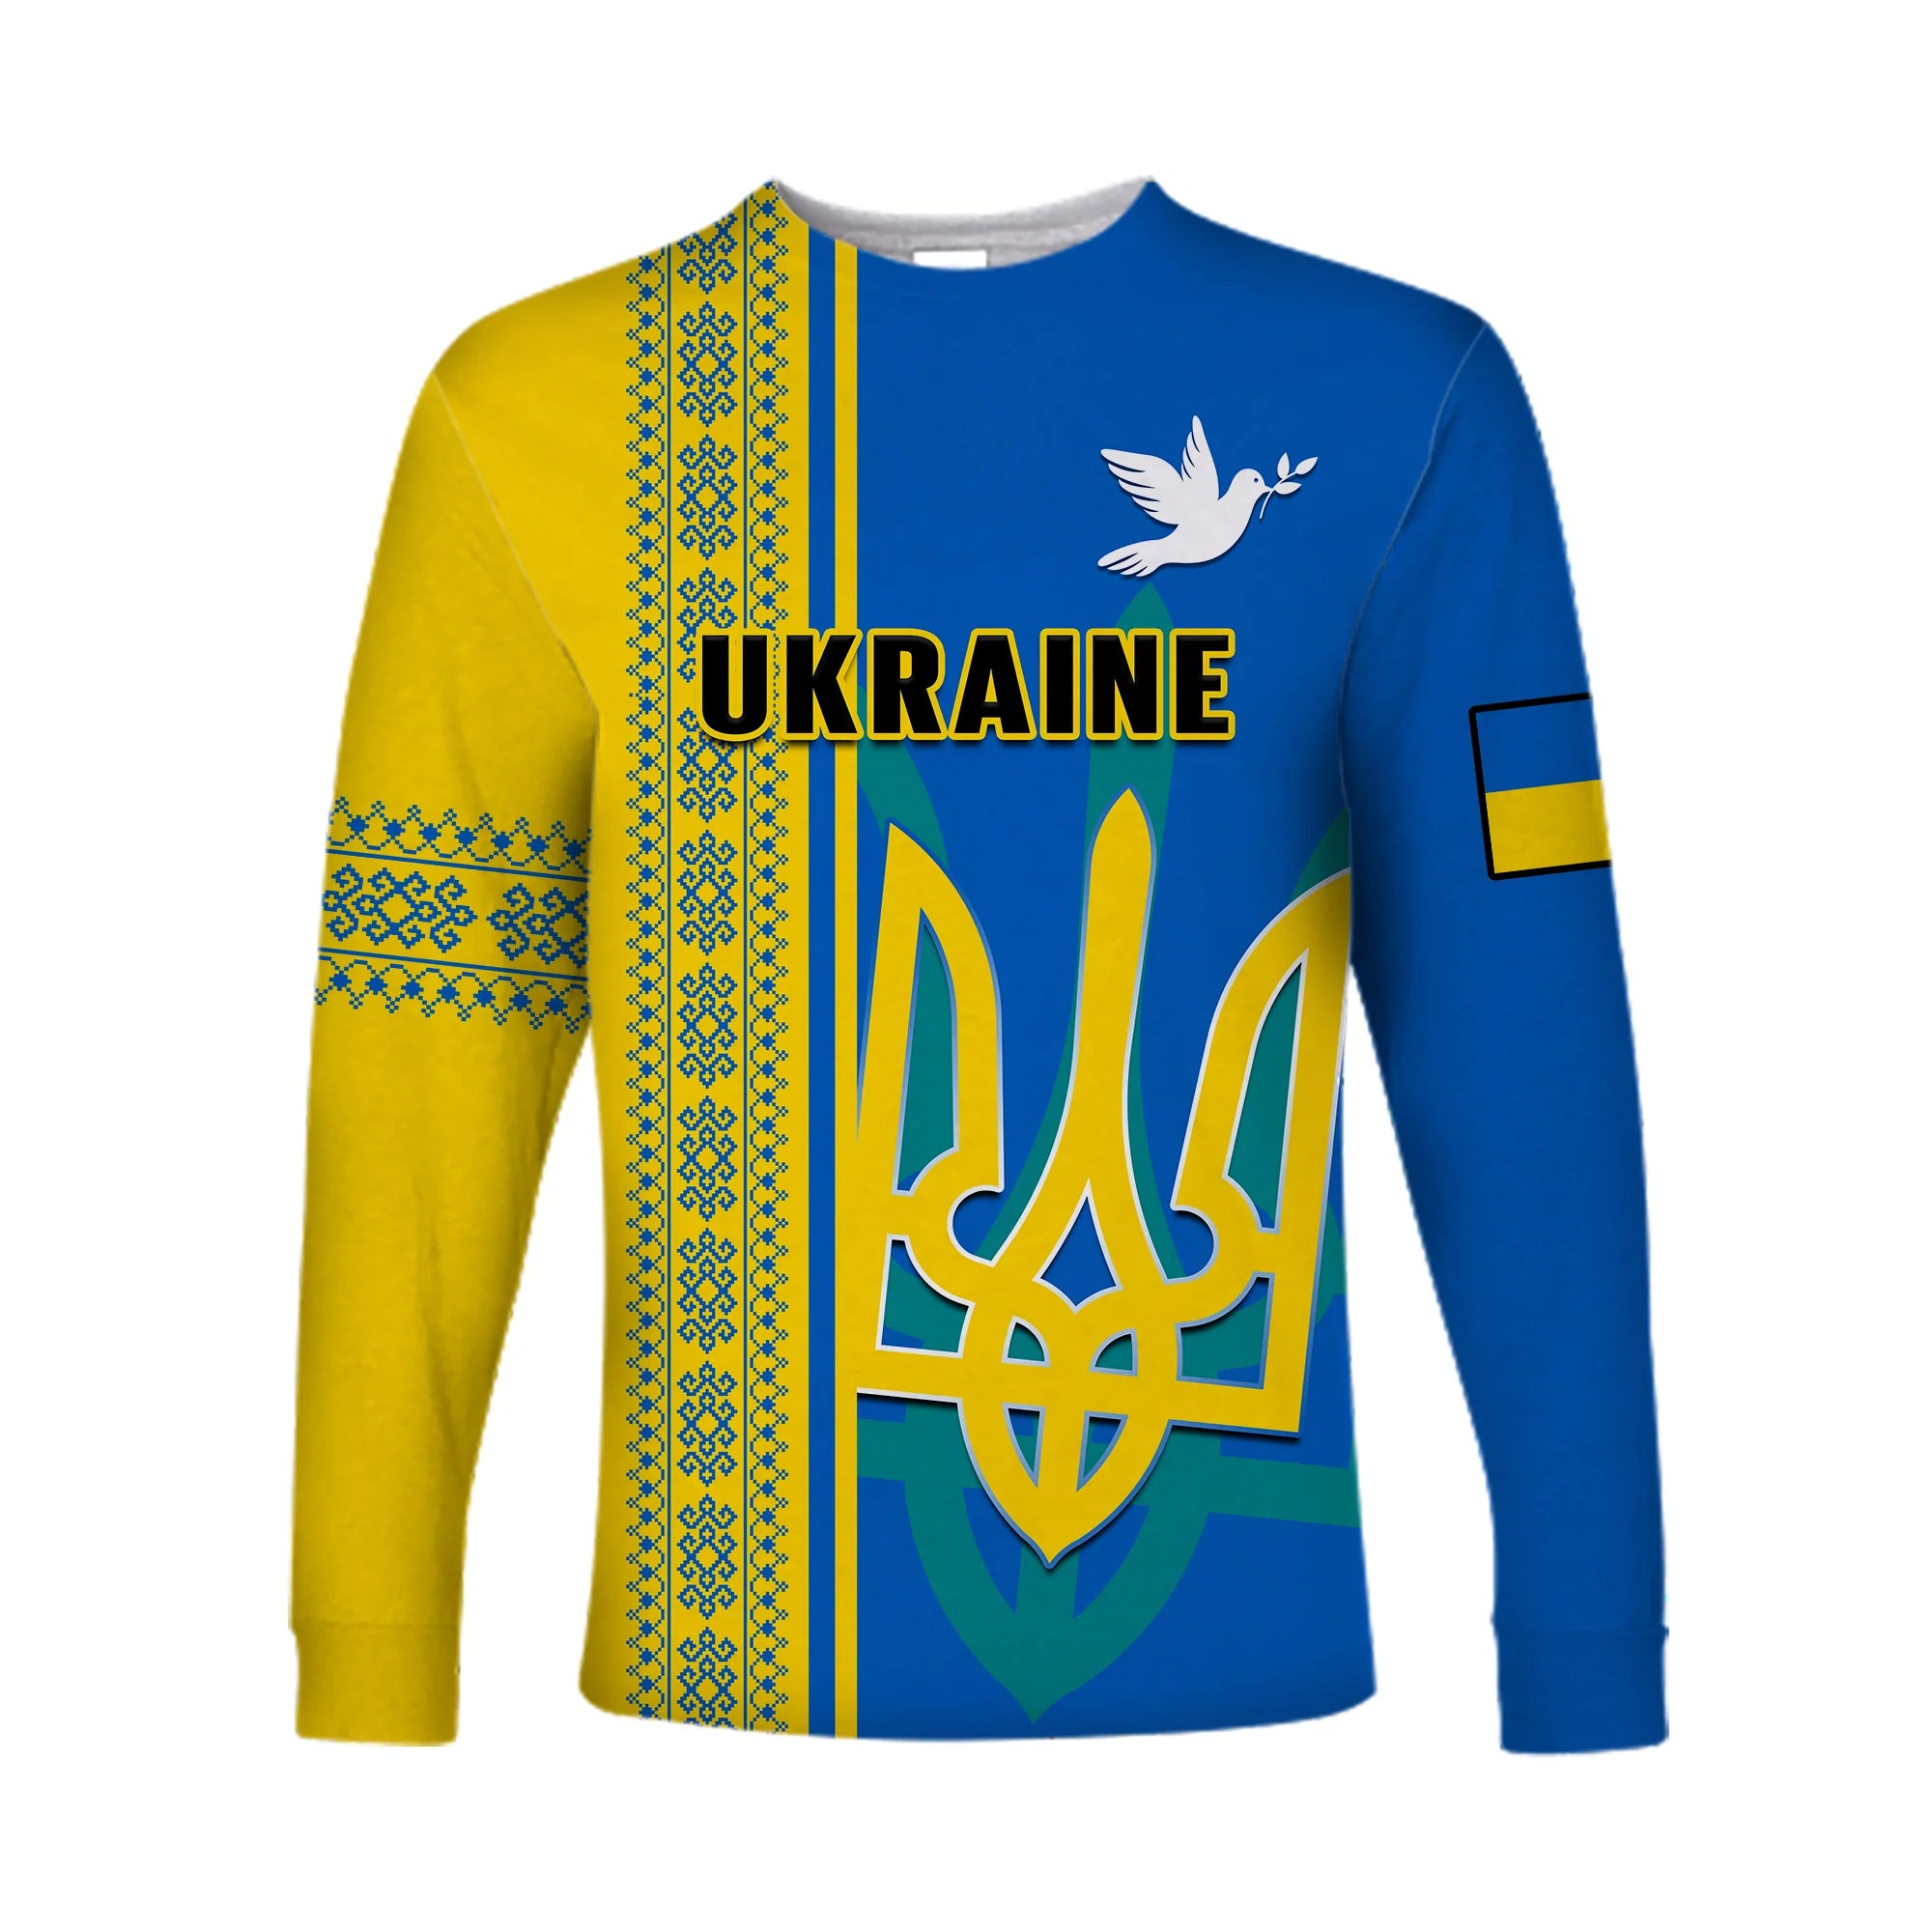 custom-personalised-ukraine-unity-day-long-sleeve-shirt-vyshyvanka-ukrainian-coat-of-arms